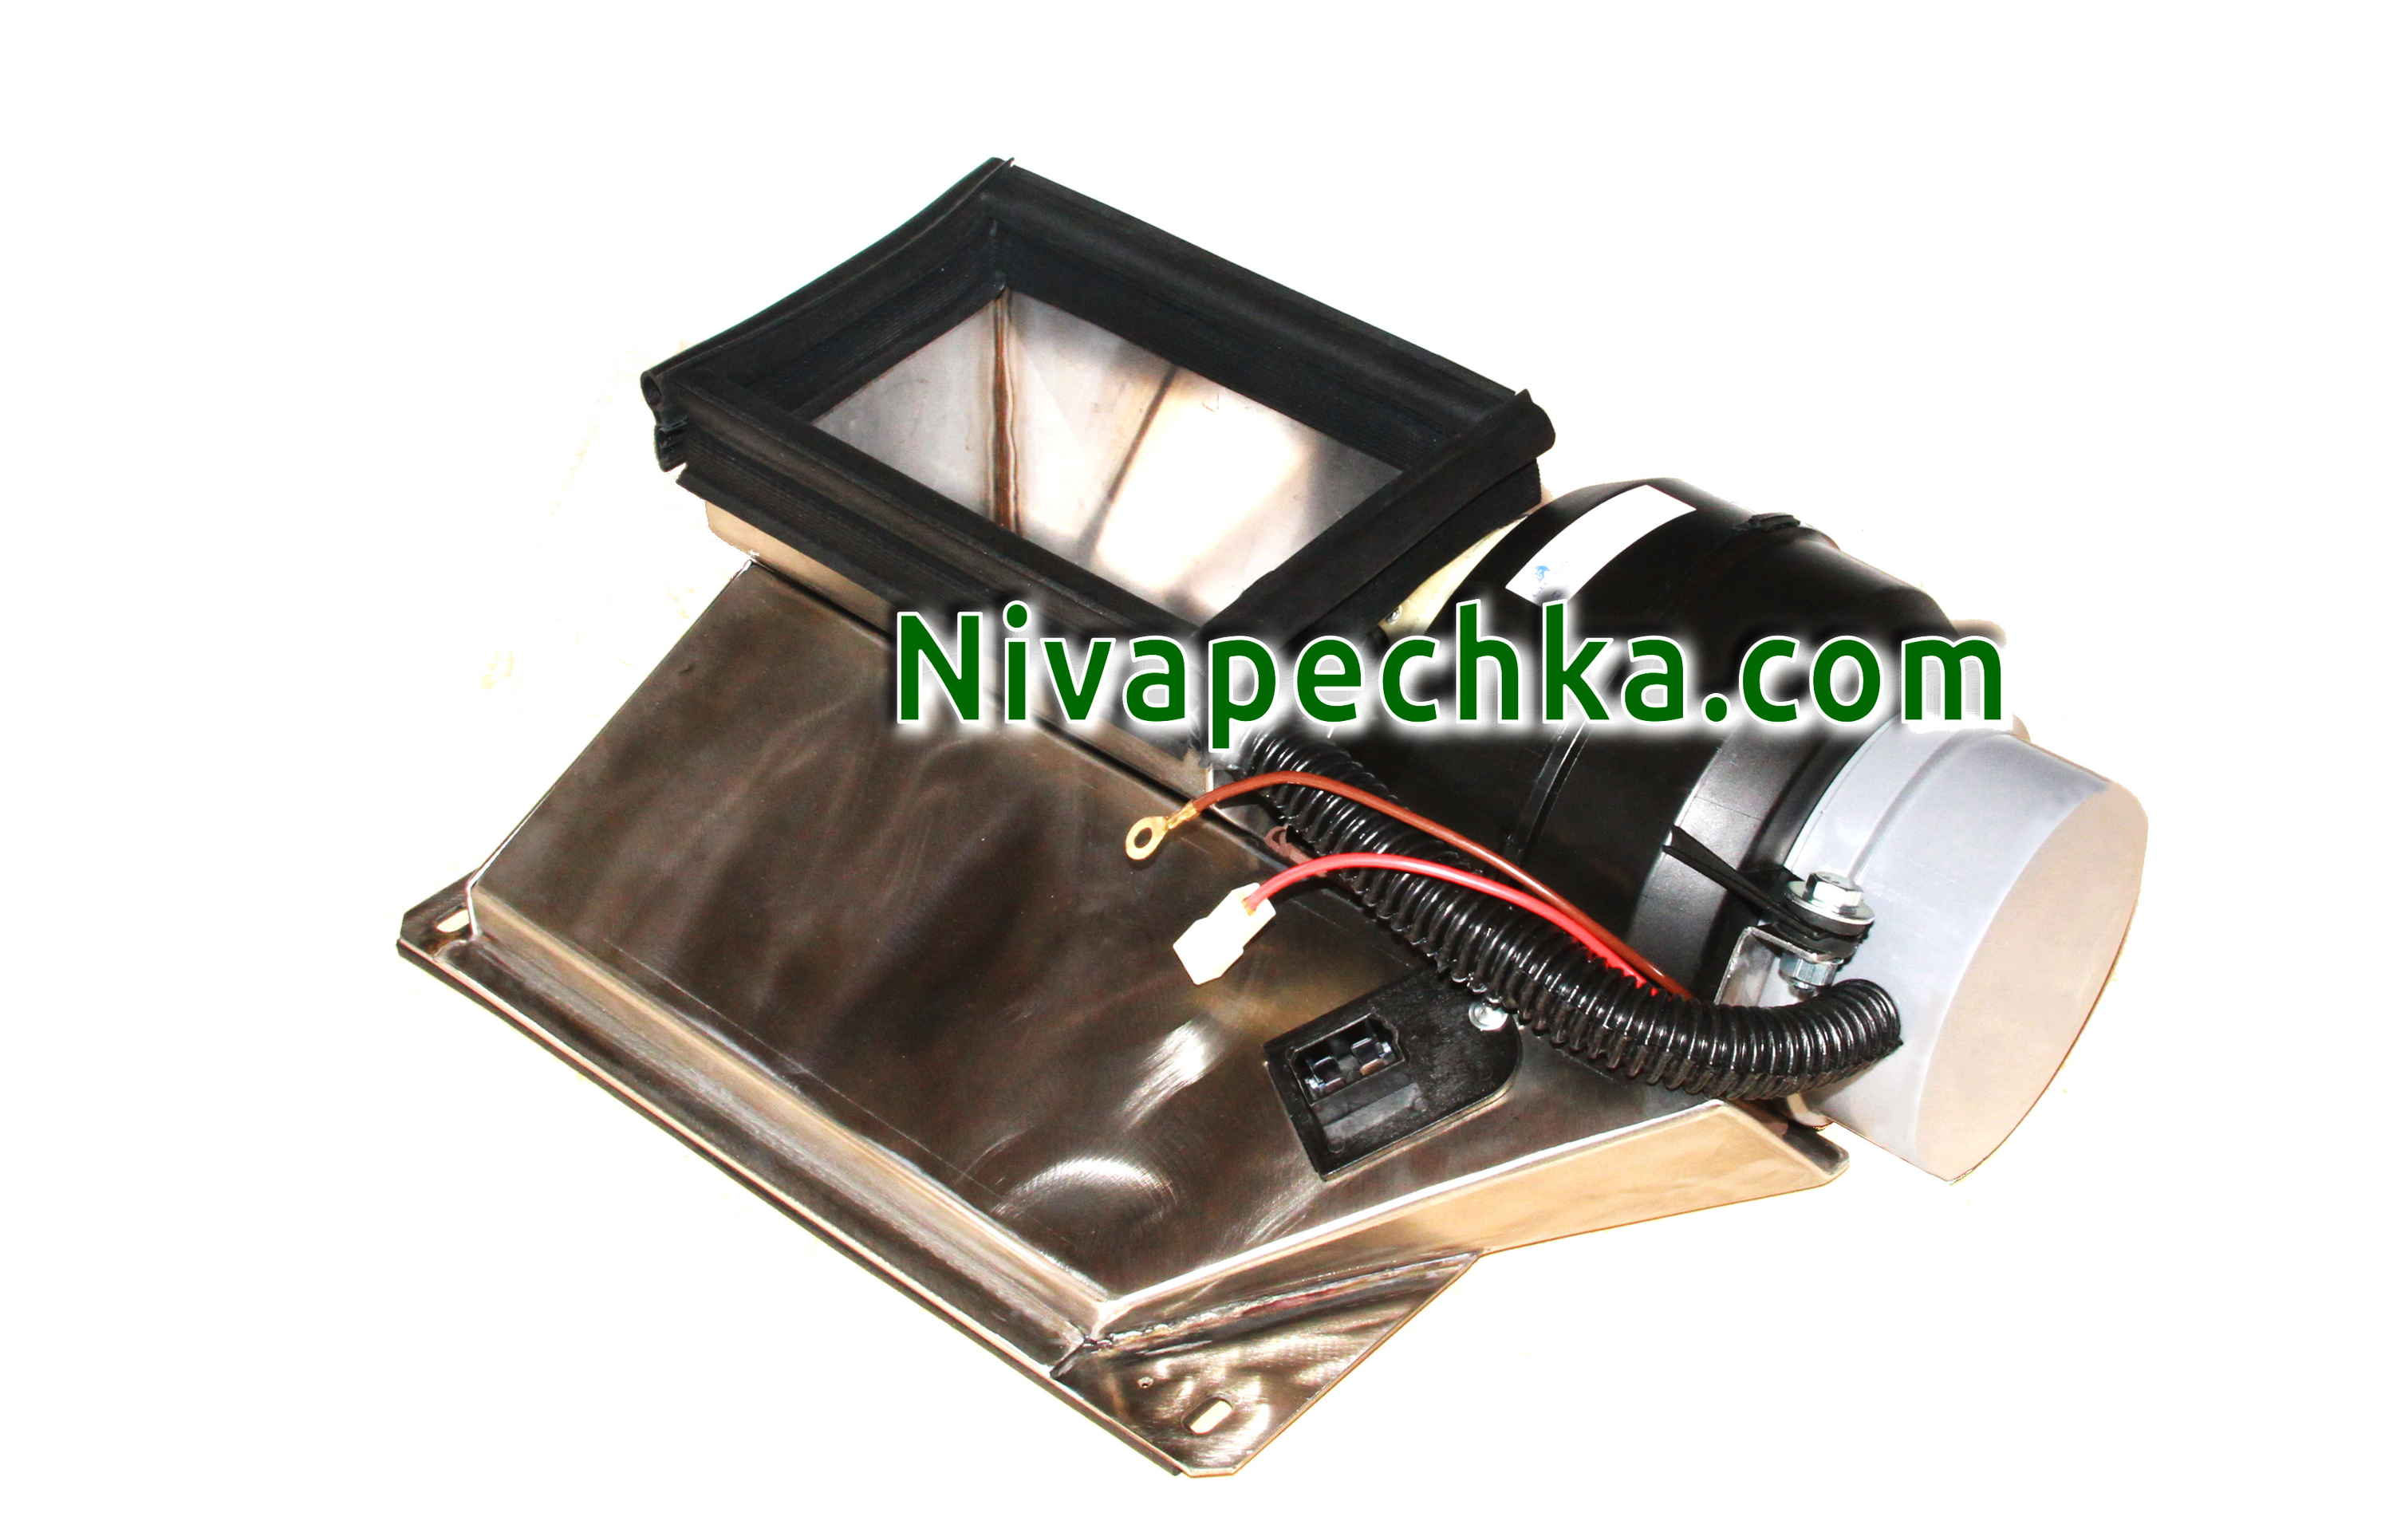 Установить вентилятор 2108 и салонный фильтр в Ниву Нива-печка из нержавейки 4x.